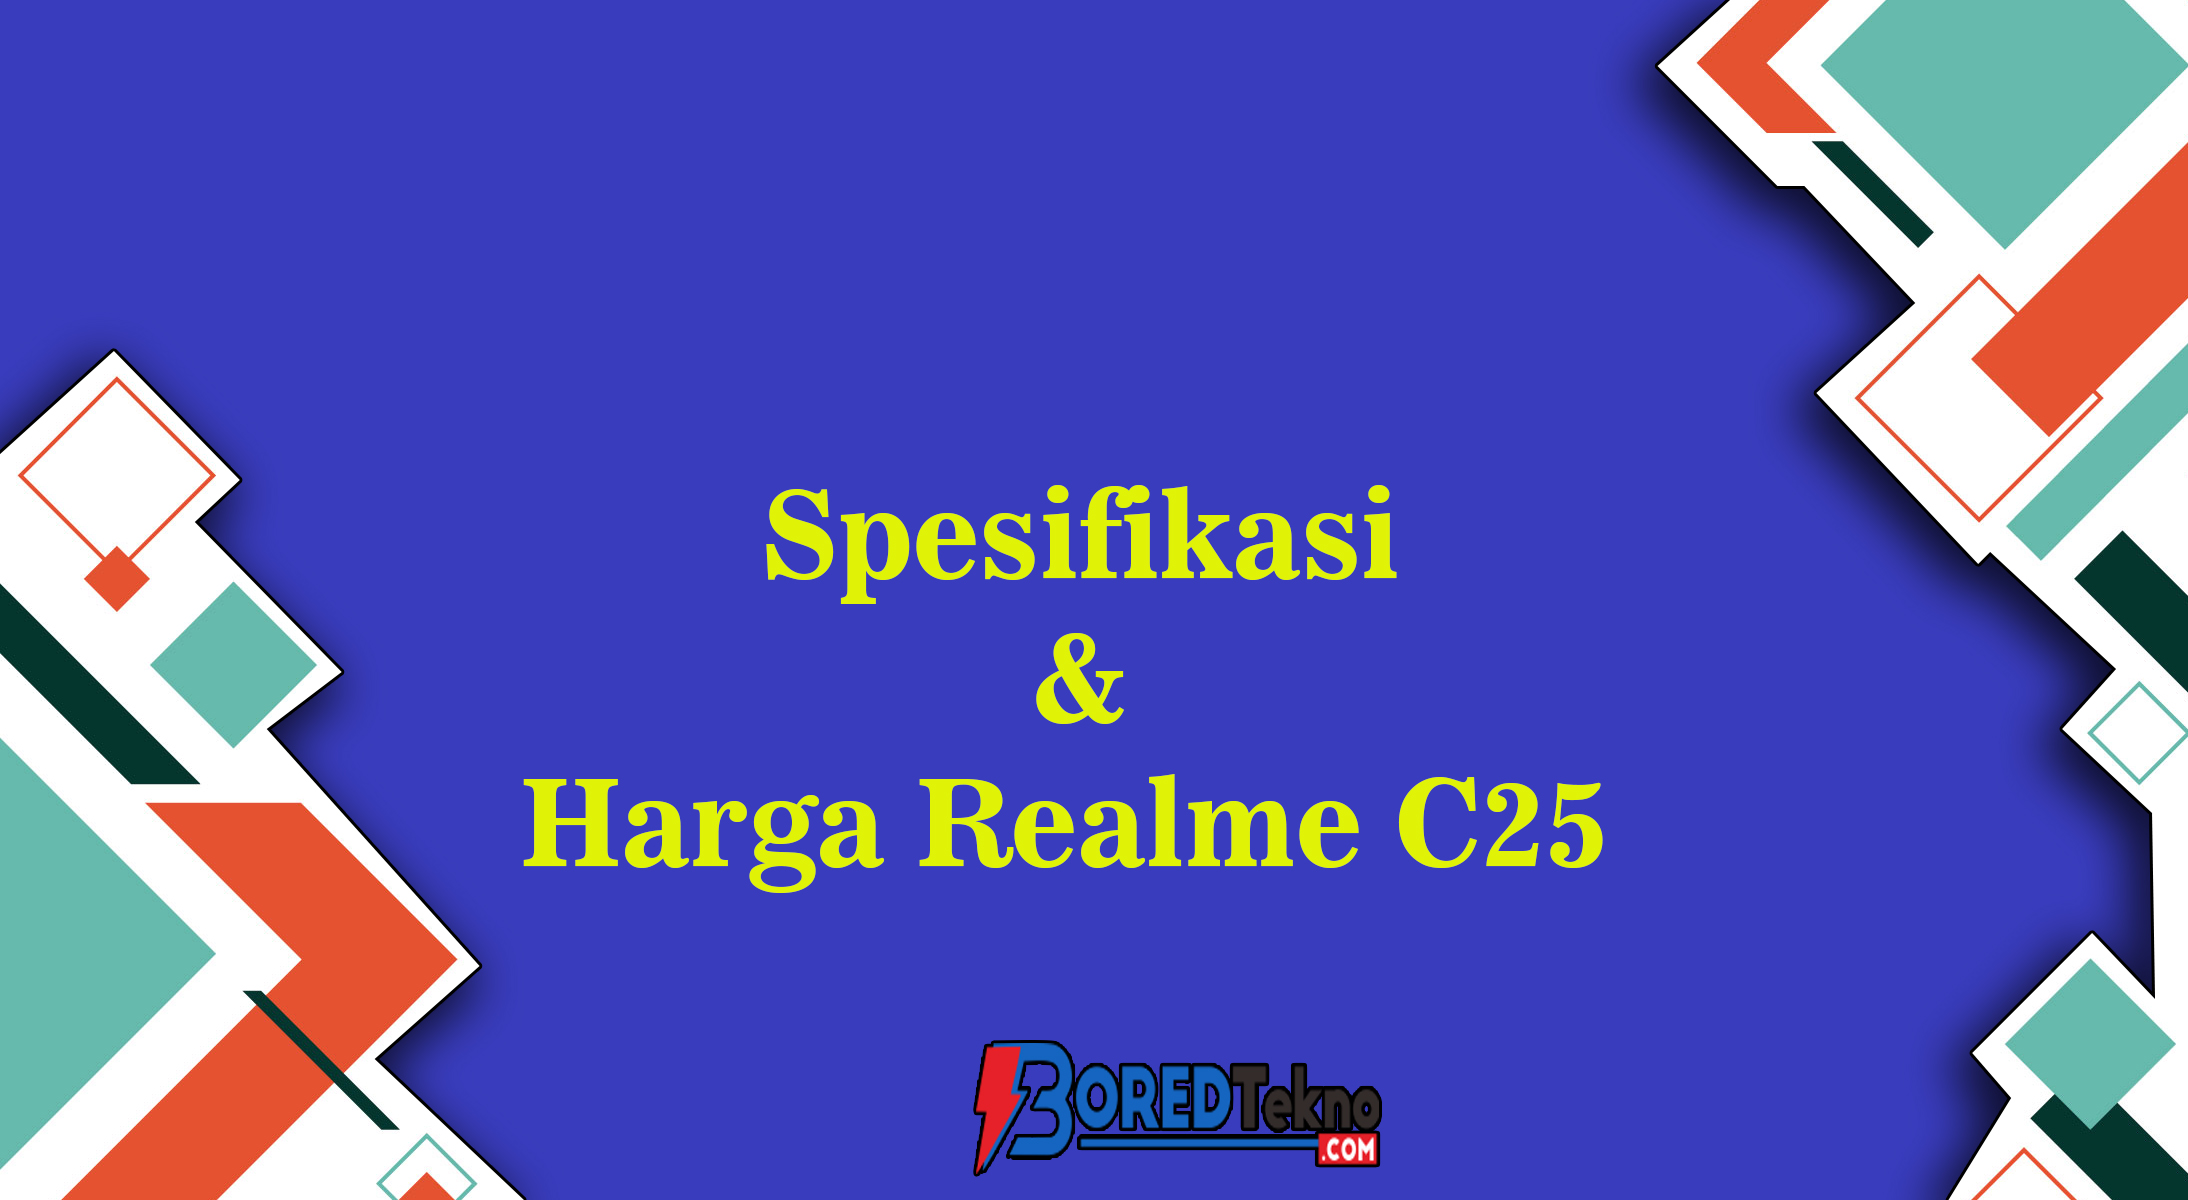 Spesifikasi & Harga Realme C25